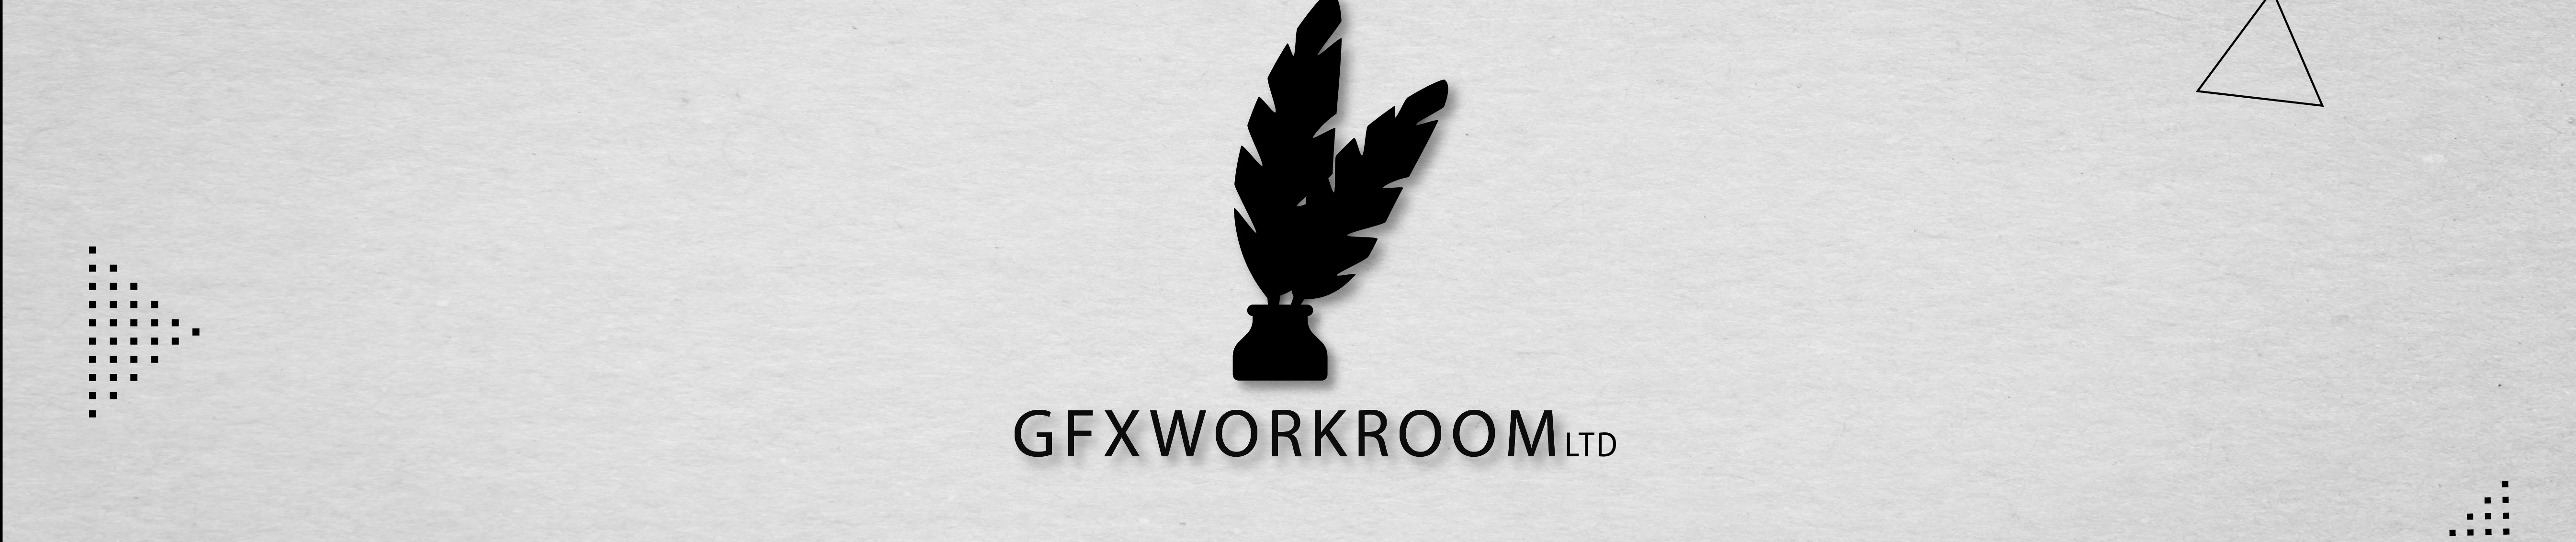 Bannière de profil de GFX workroom